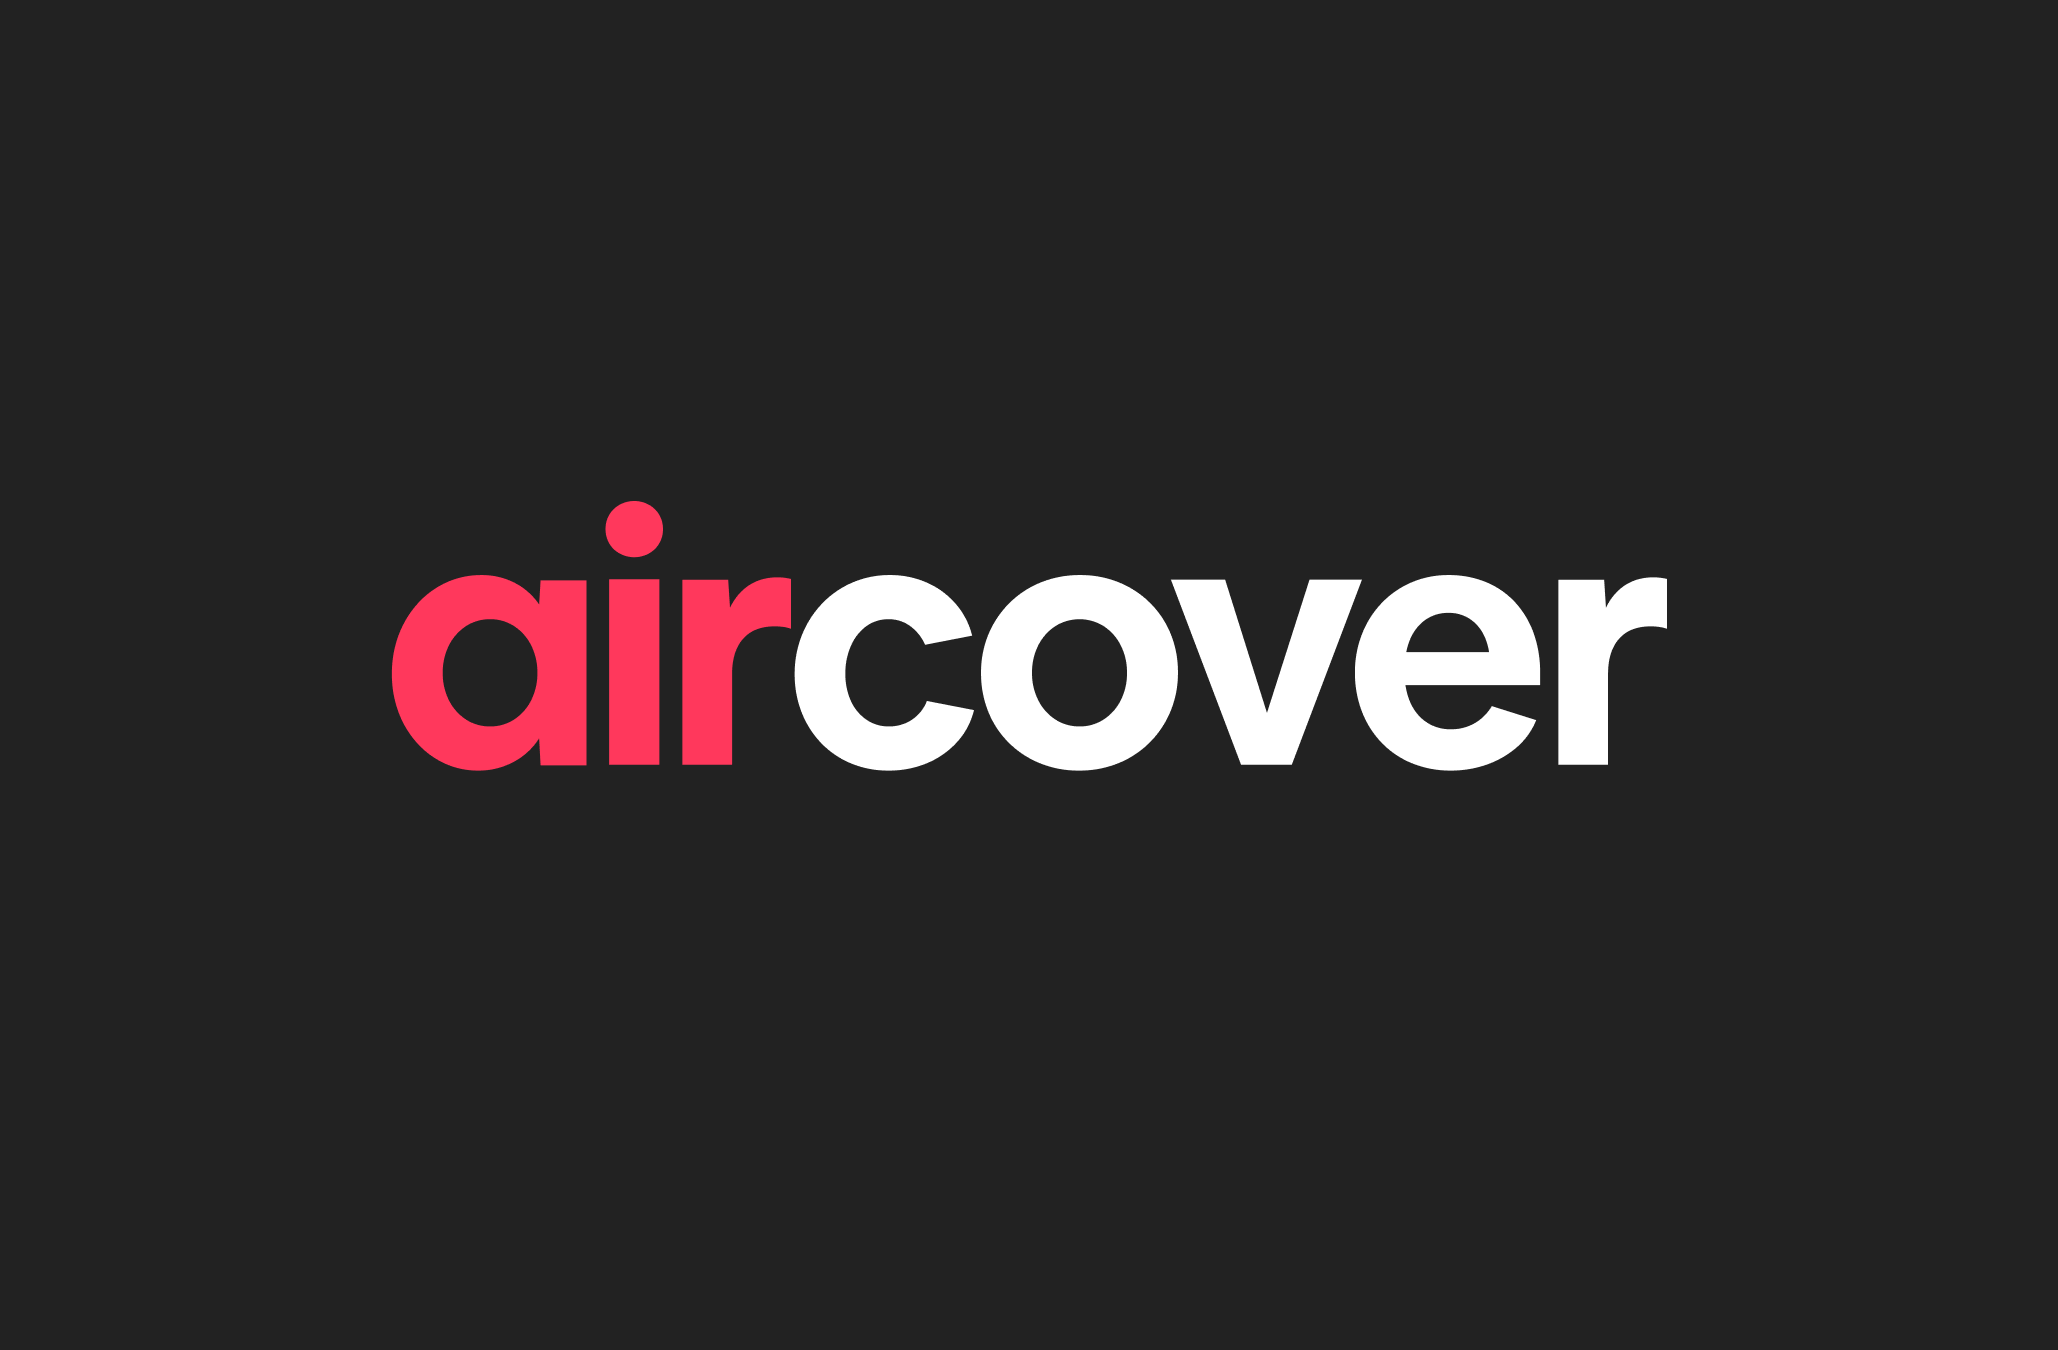 Il logo di AirCover, in lettere bianche e rosse, su uno sfondo nero.